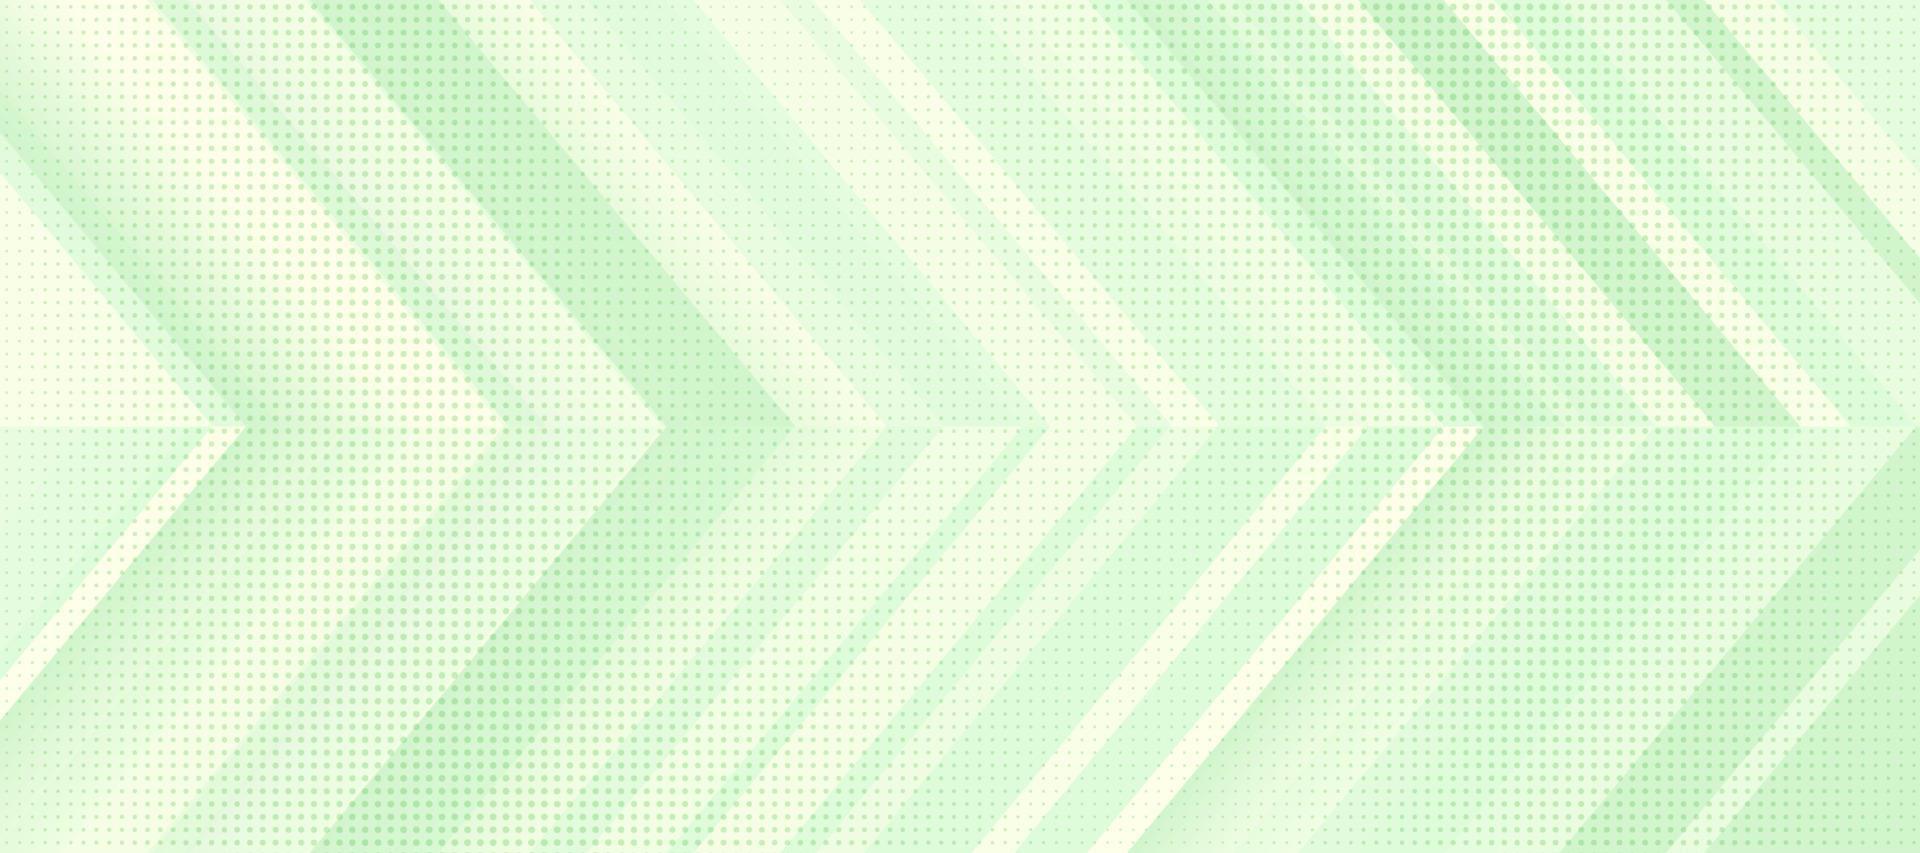 modernes und minimales pastellfarbenes Bannerdesign mit geometrischer Form. halbtonpunktierte musterdekoration. hellgrüner Winkelpfeil, der geschichteten abstrakten Hintergrund überlappt. Vektor-Illustration vektor